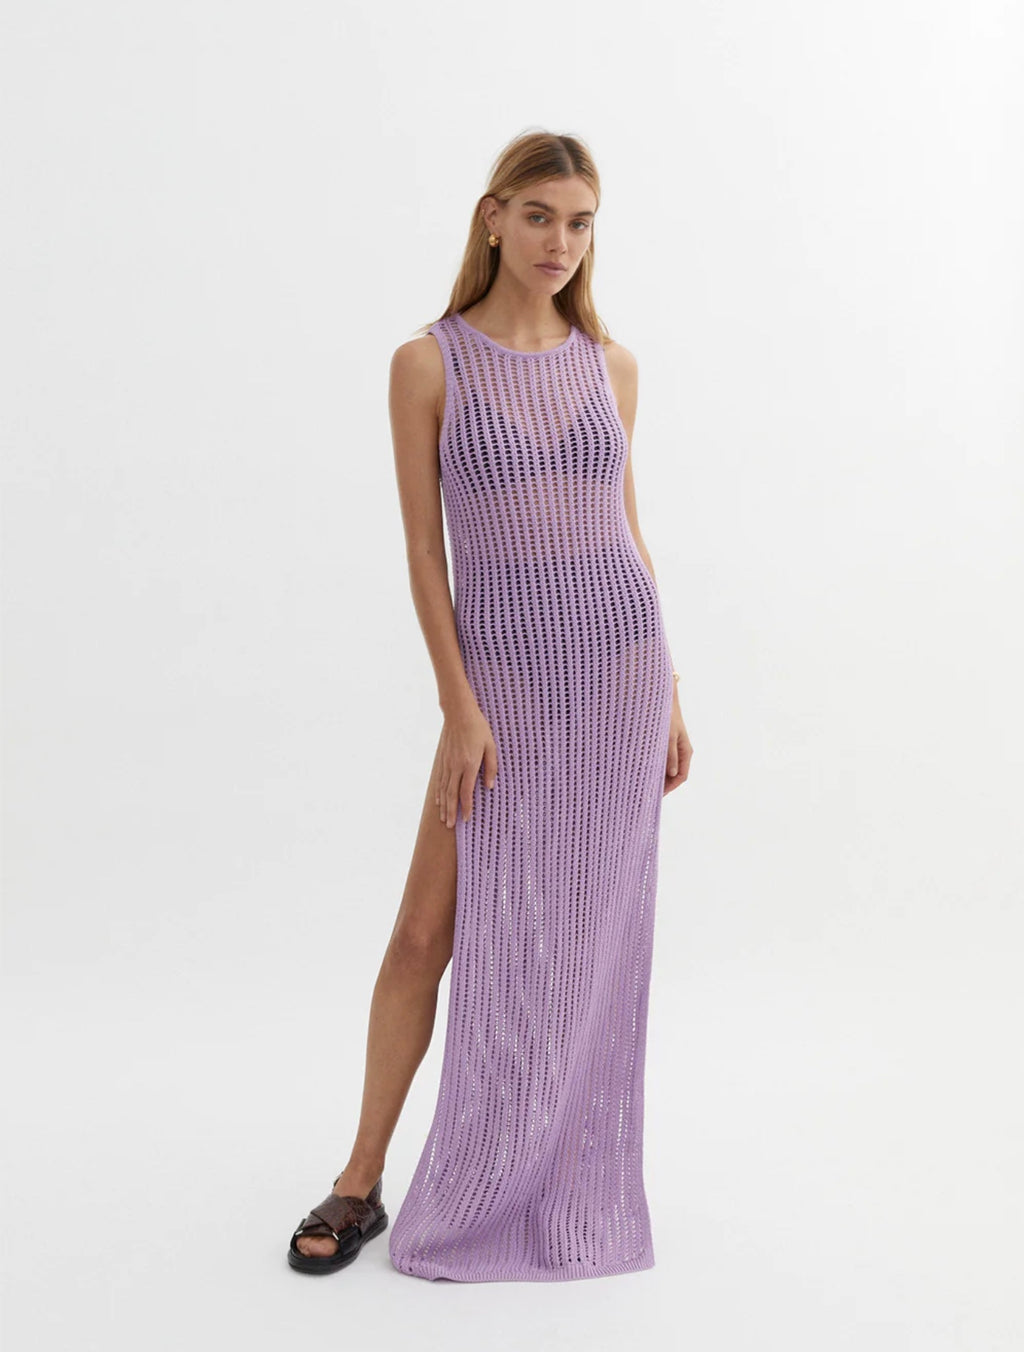 Blanca Mona Knit Dress in Purple